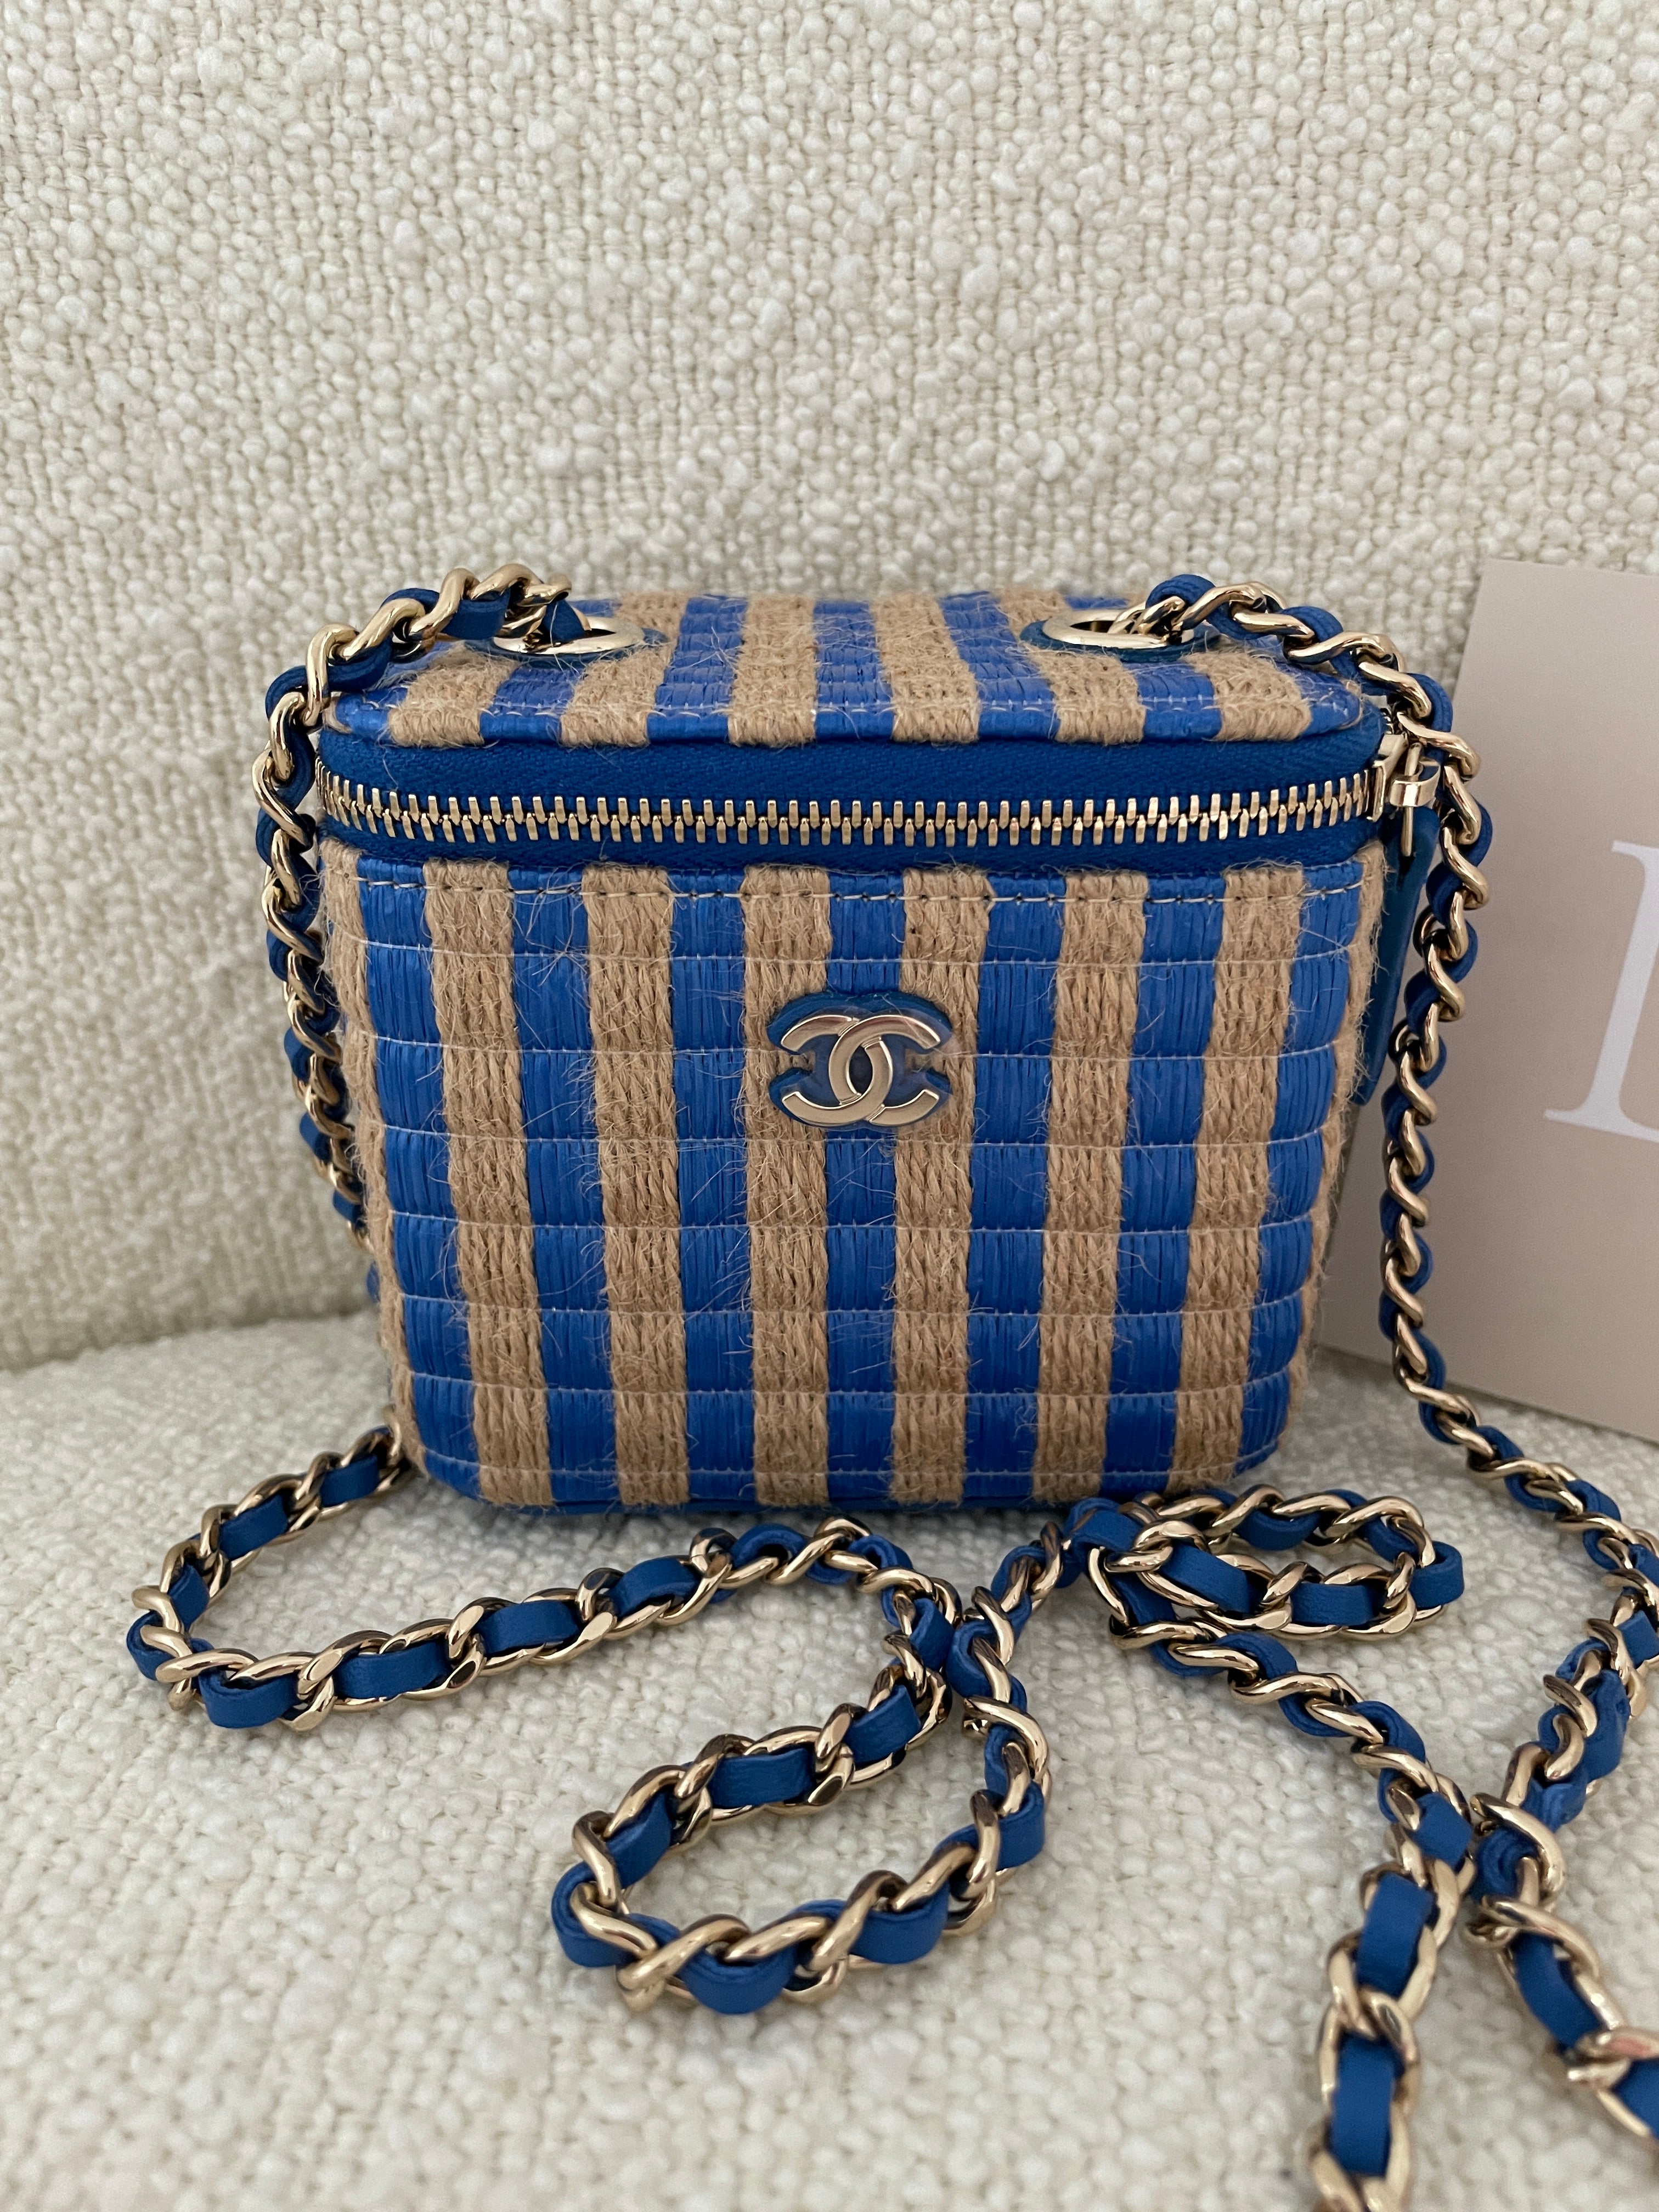 Chanel Vanity Case Rare Vintage Blue Mini Crossbody Black Denim Shoulder Bag